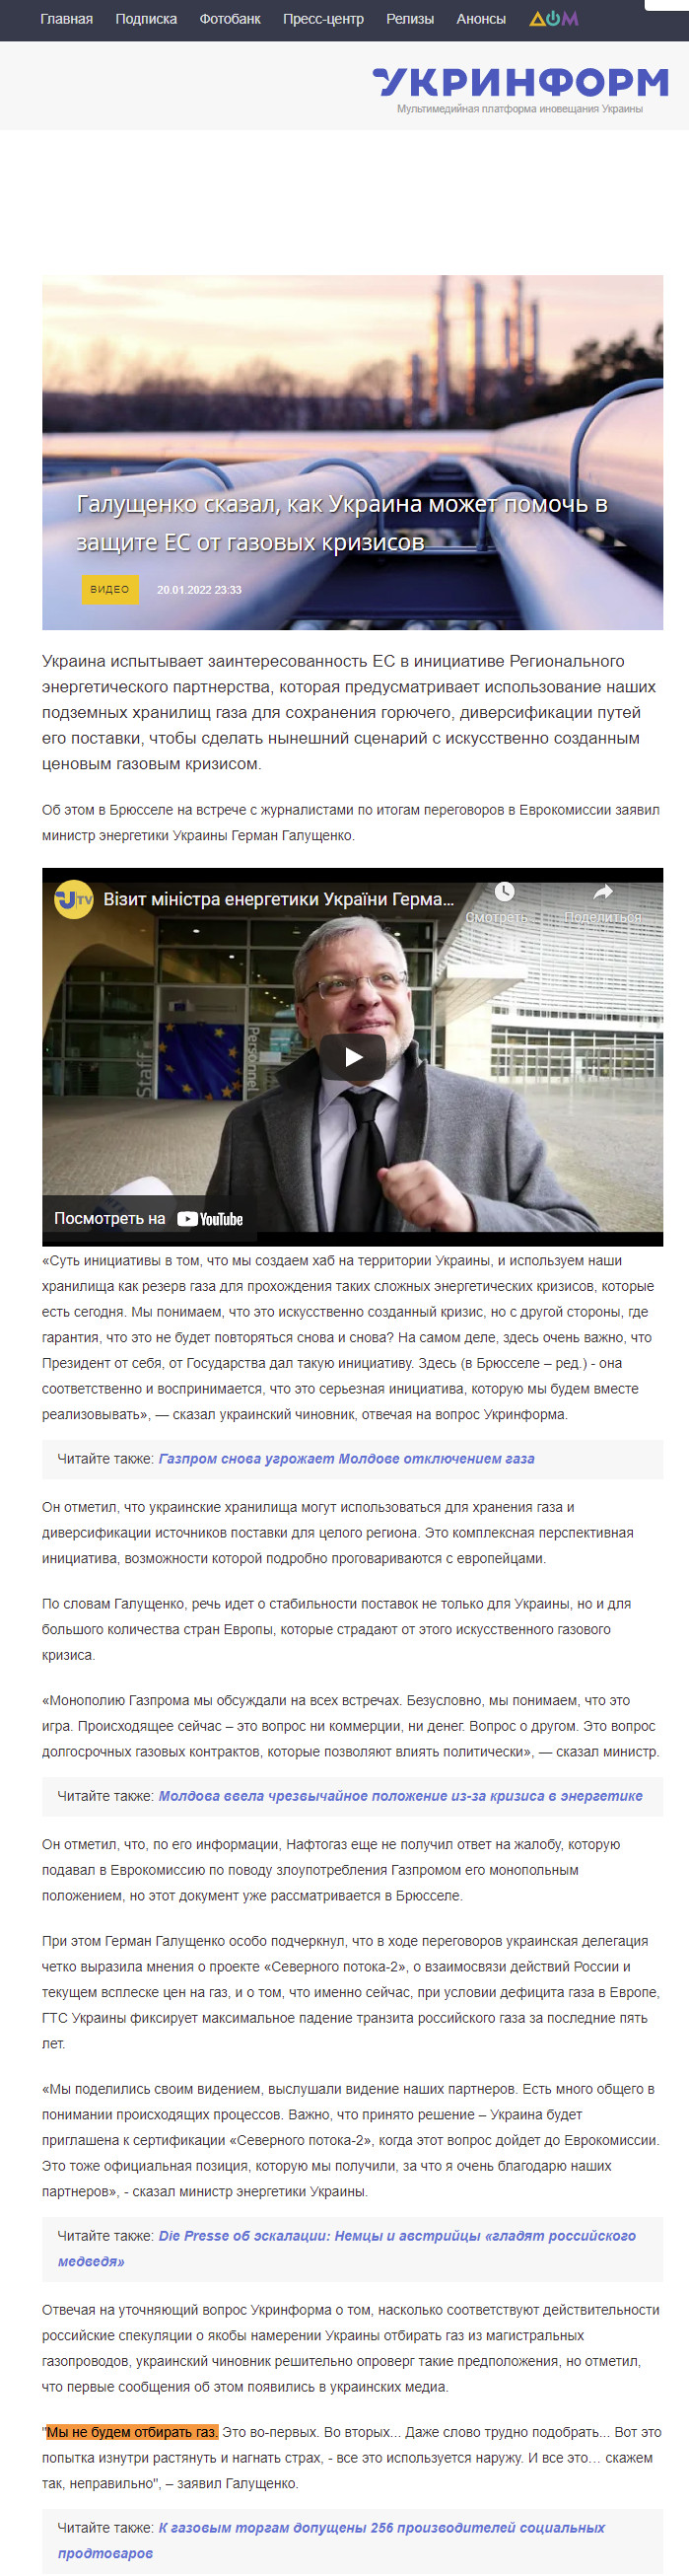 https://www.ukrinform.ru/rubric-economy/3388892-galusenko-skazal-kak-ukraina-mozet-pomoc-v-zasite-es-ot-gazovyh-krizisov.html